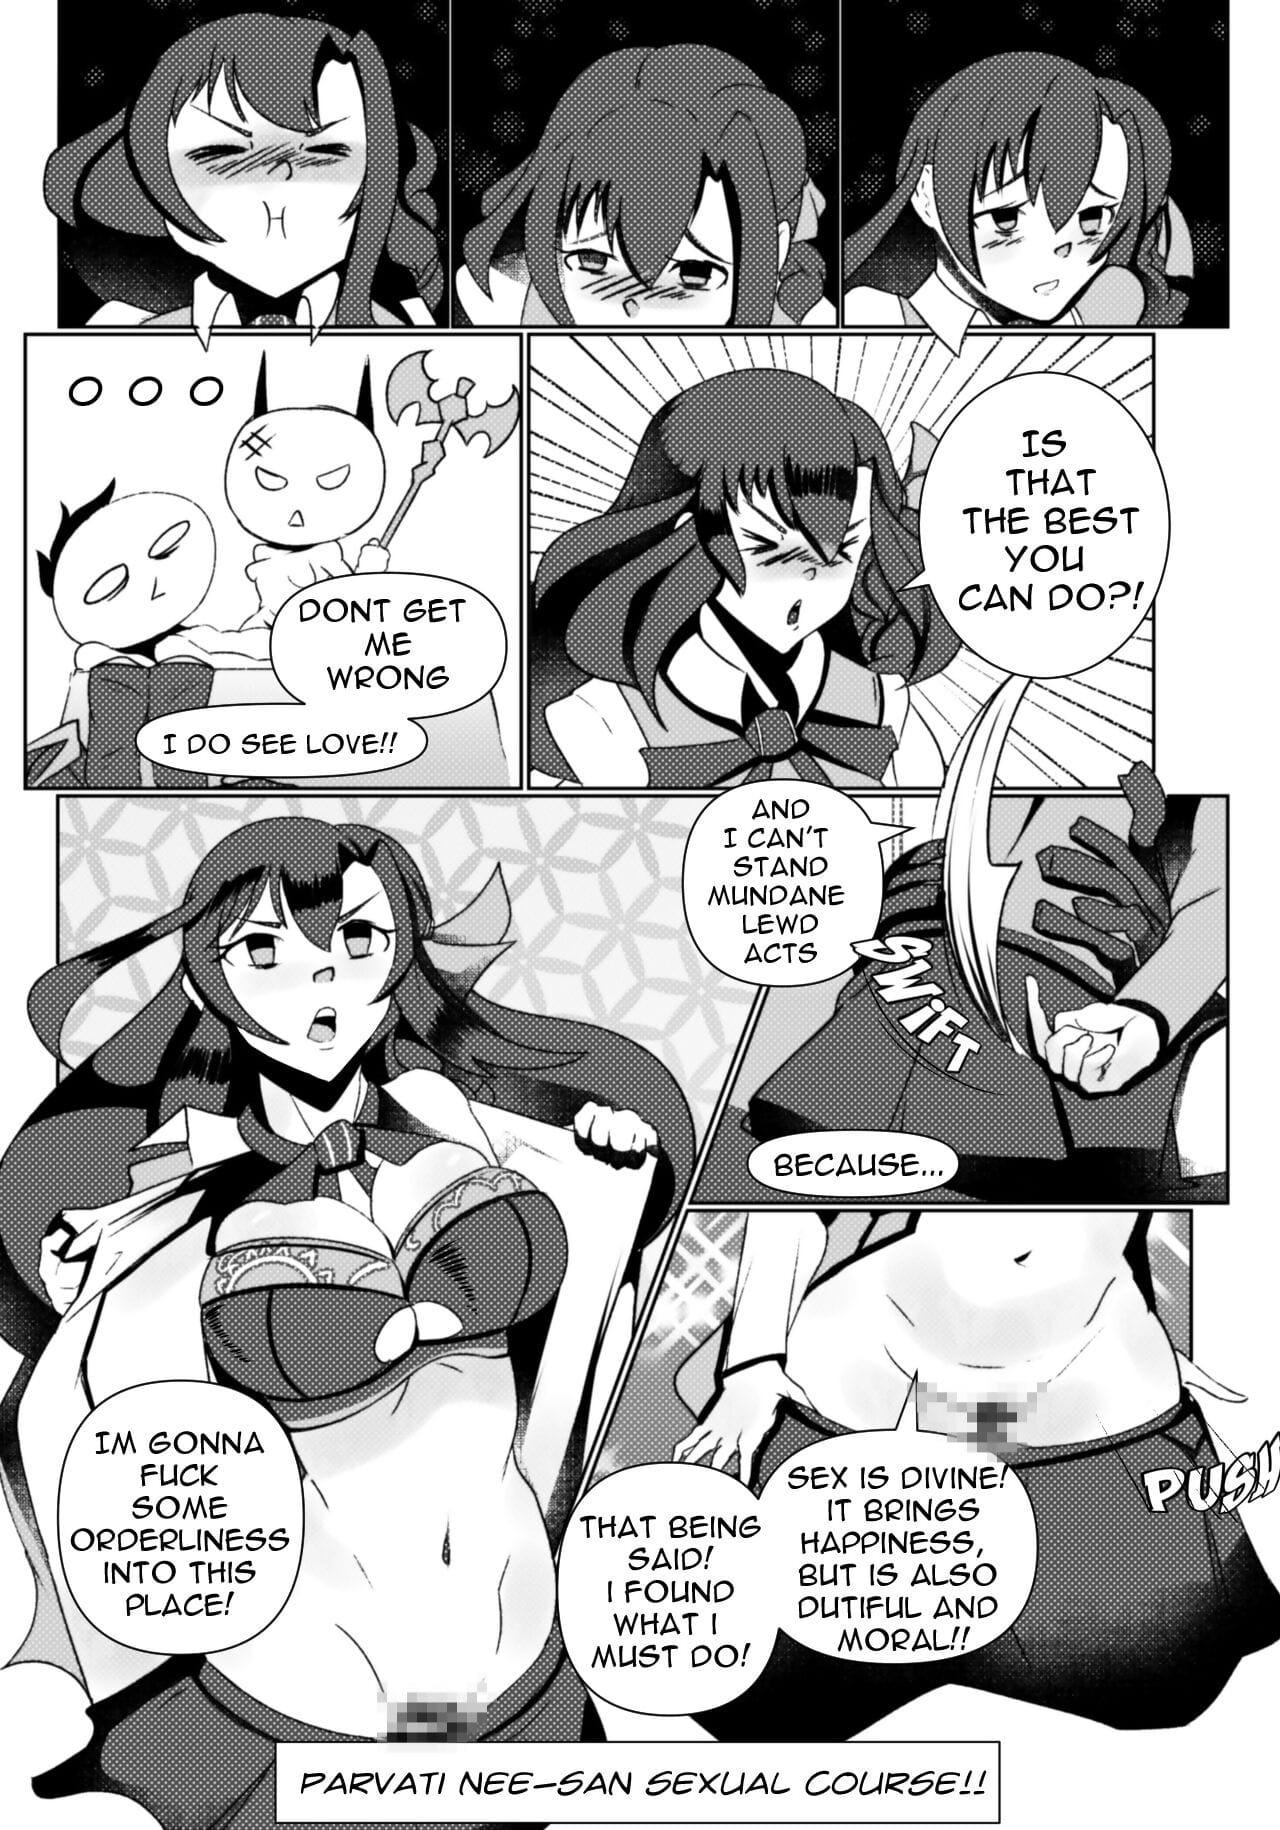 carmillas tình dục nhiên page 1